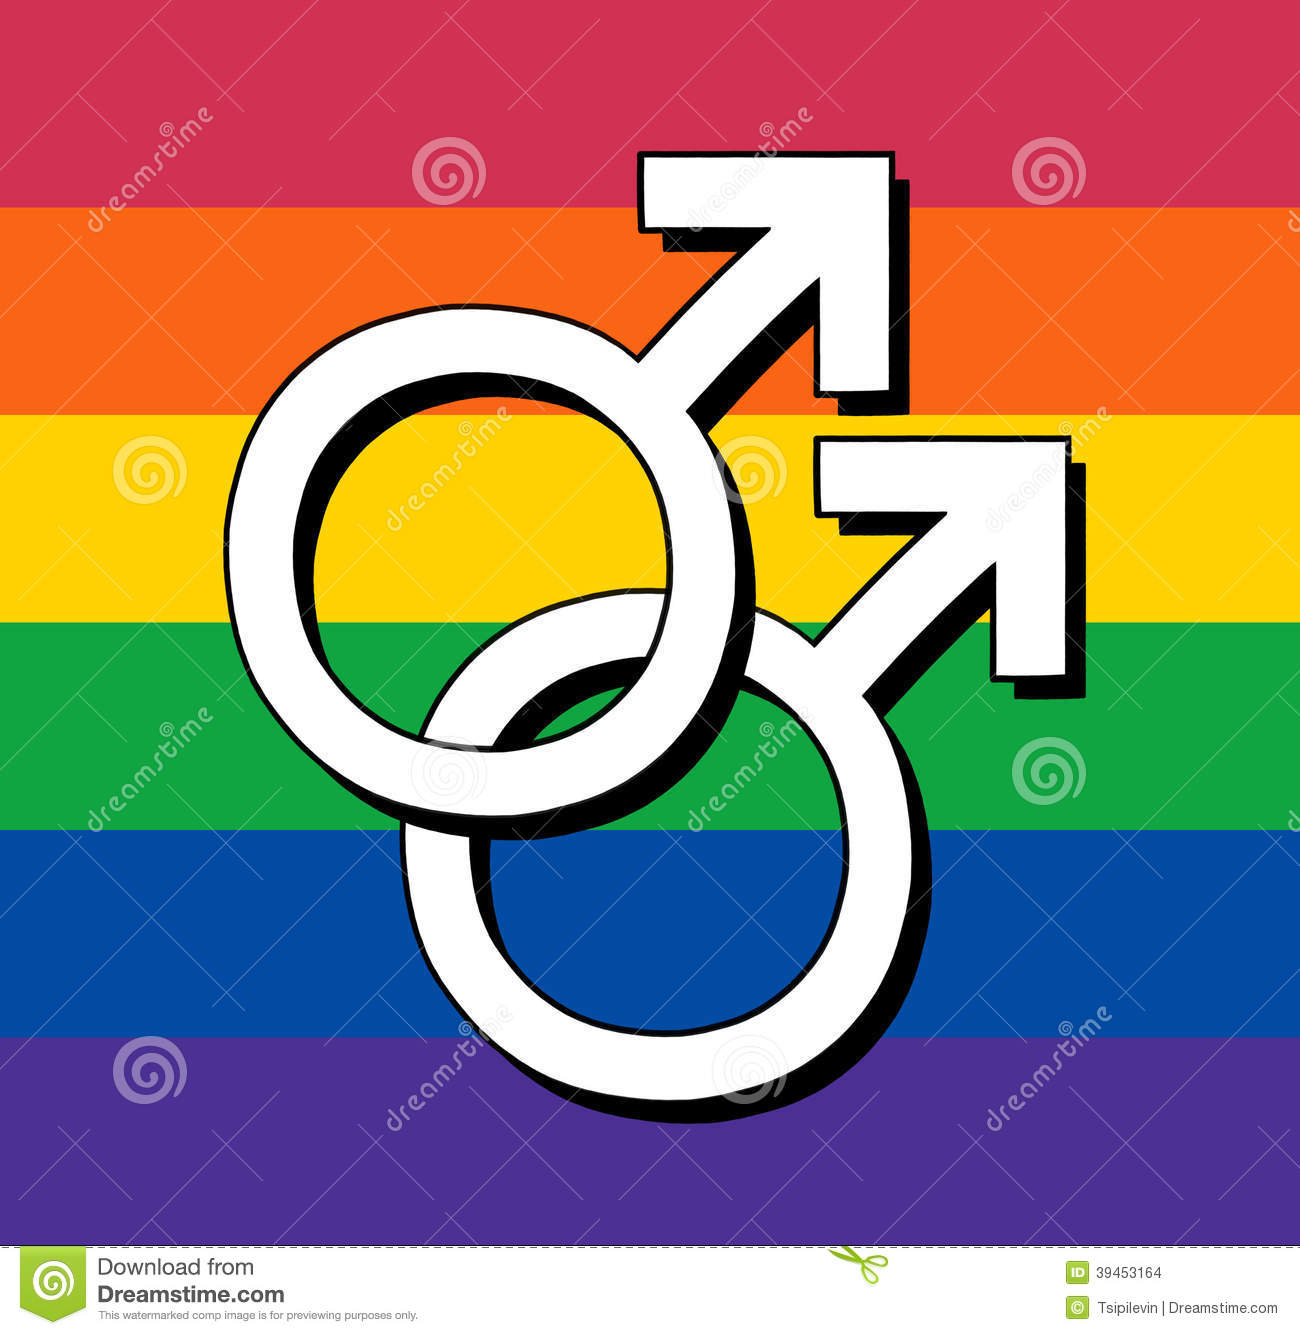 gay-flag-male-symbol-rainbow-39453164.jpg